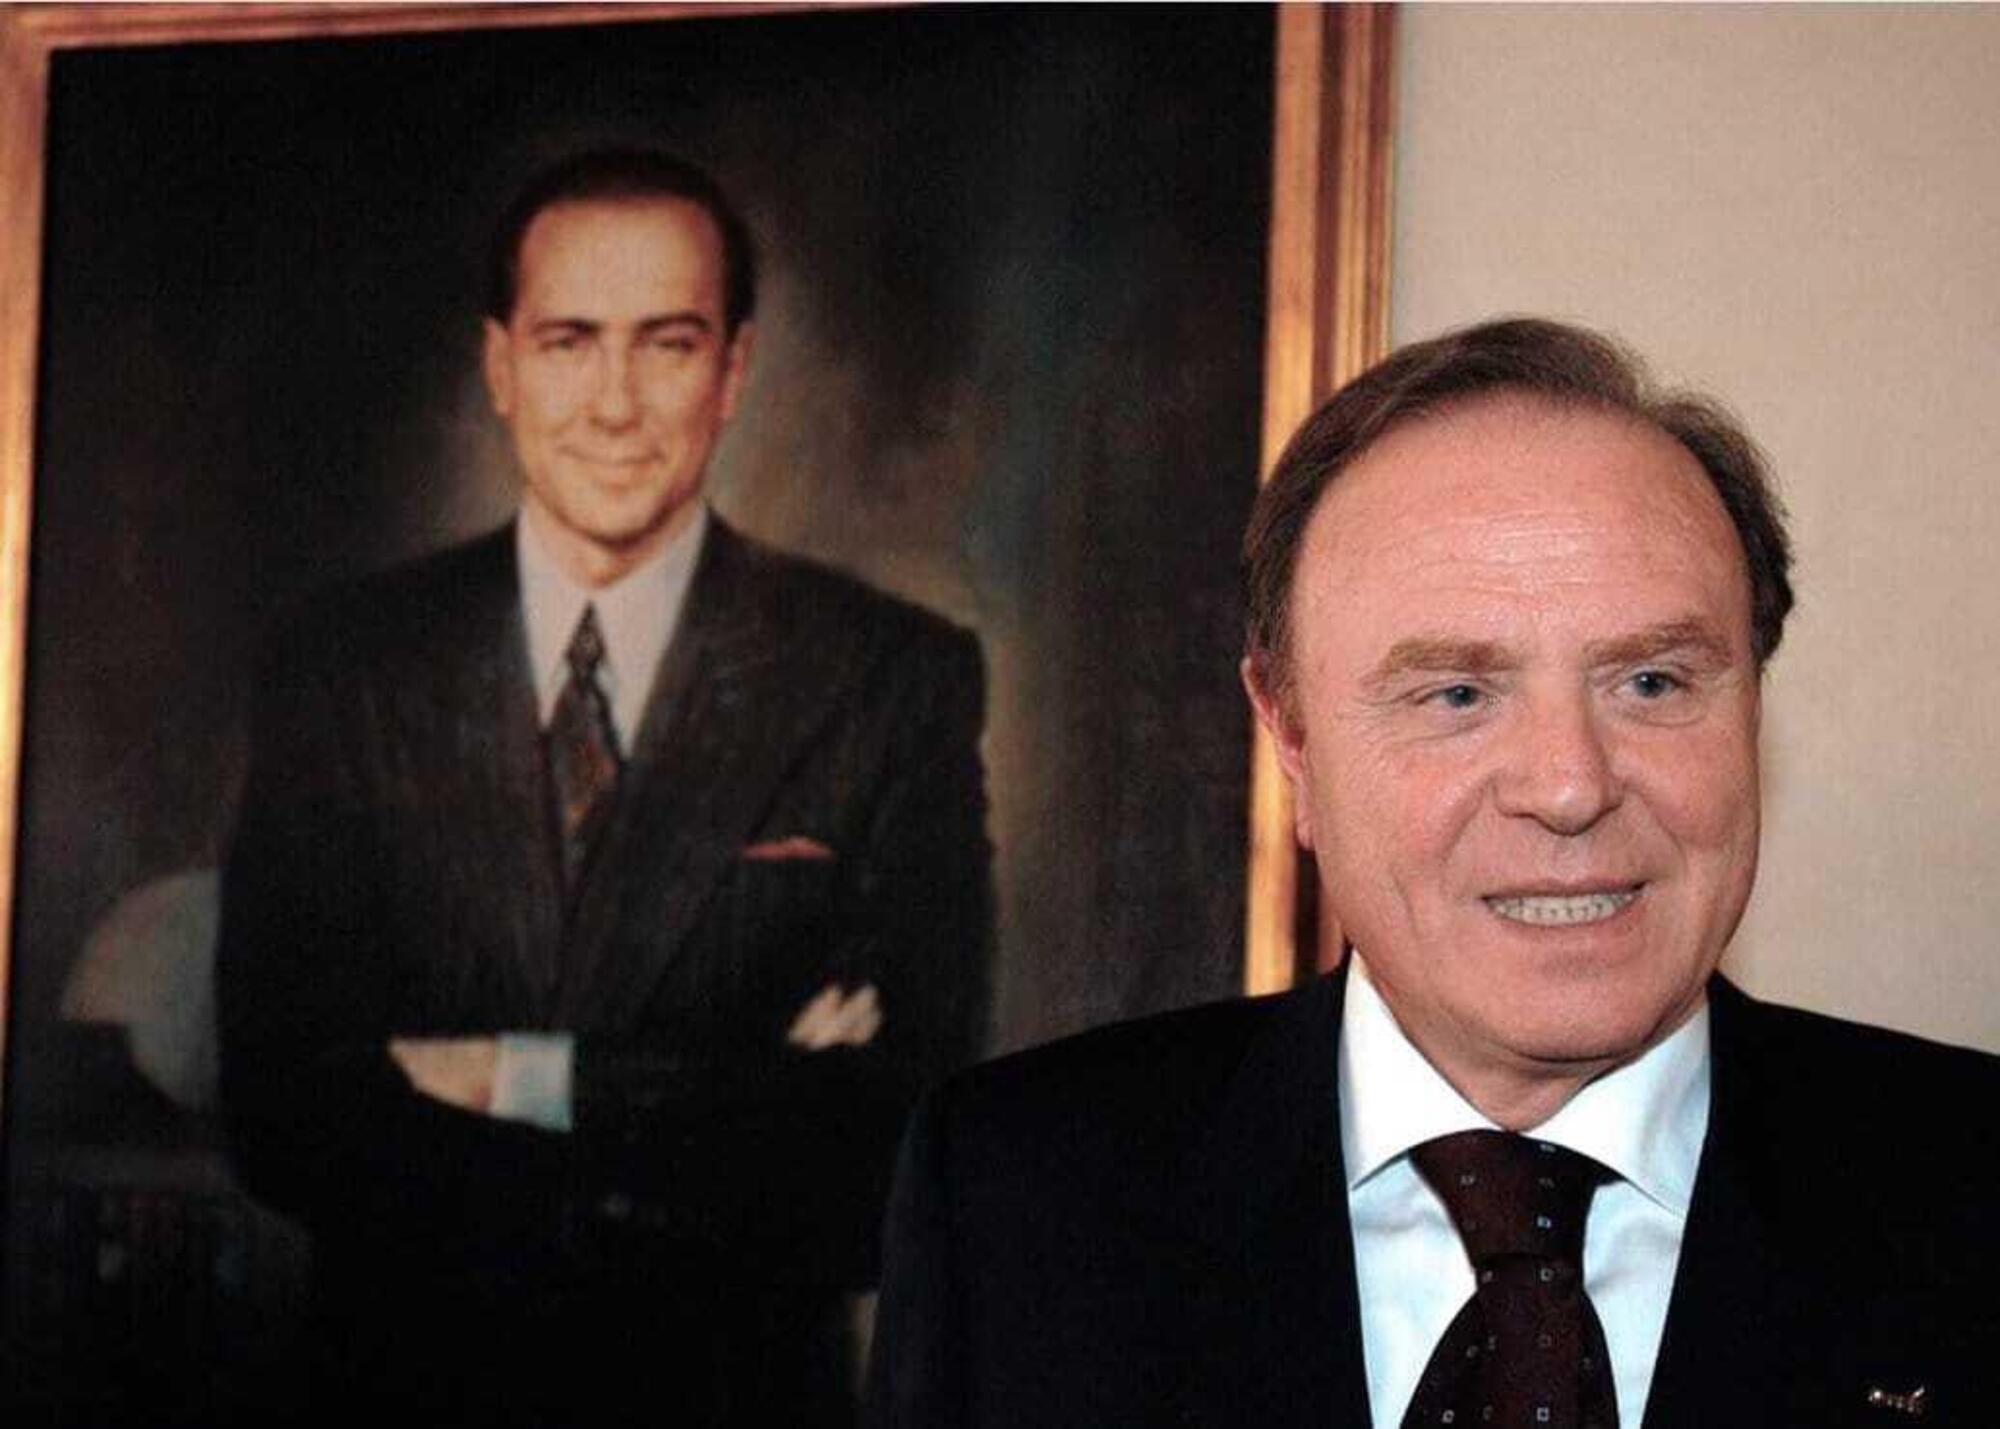 Doris e Berlusconi